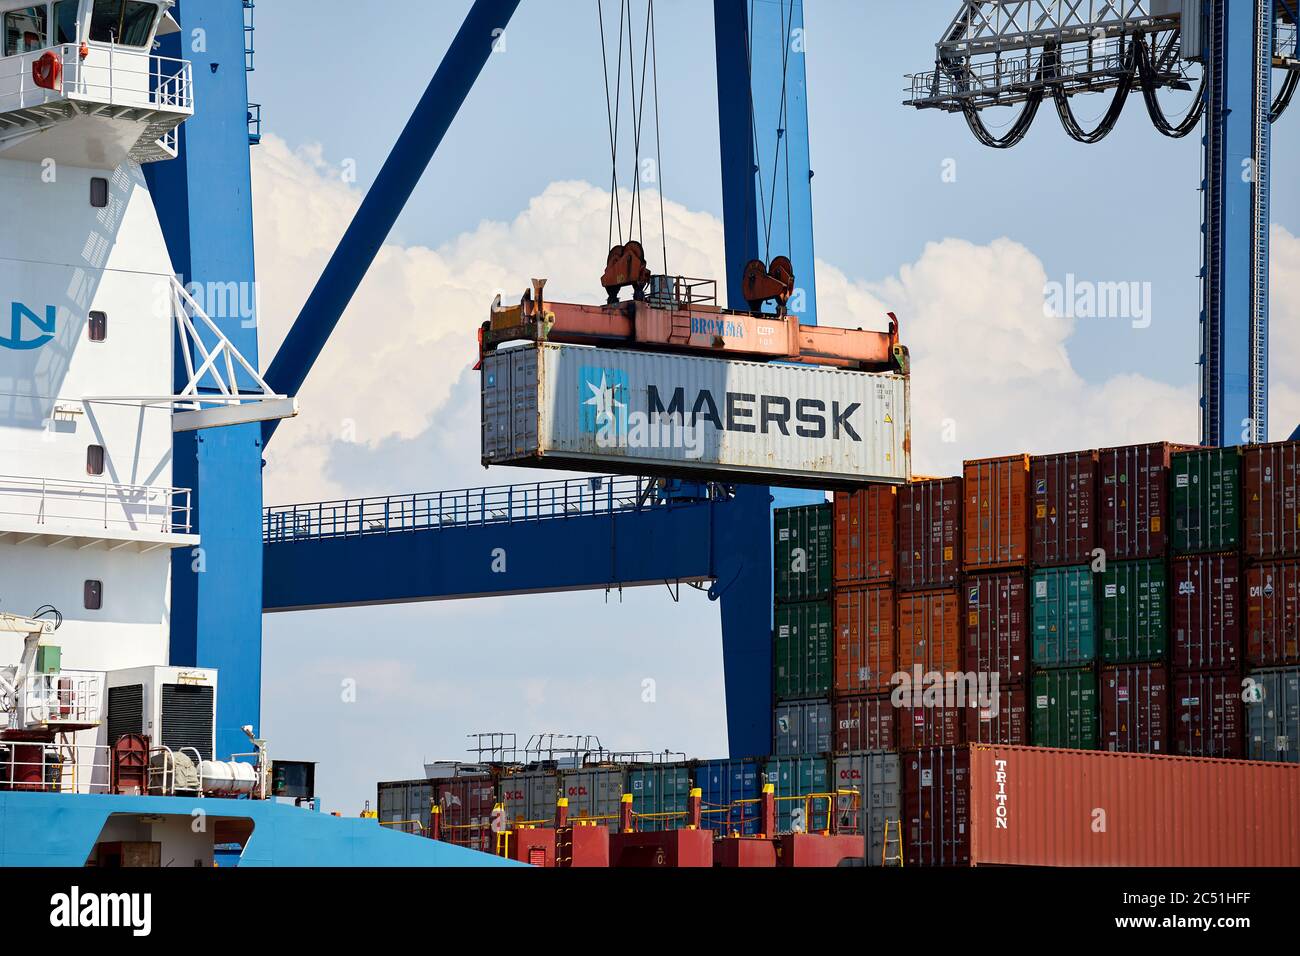 Conteneur d'expédition Maersk déchargé du navire par grue navire-terre; Copenhague, Danemark Banque D'Images